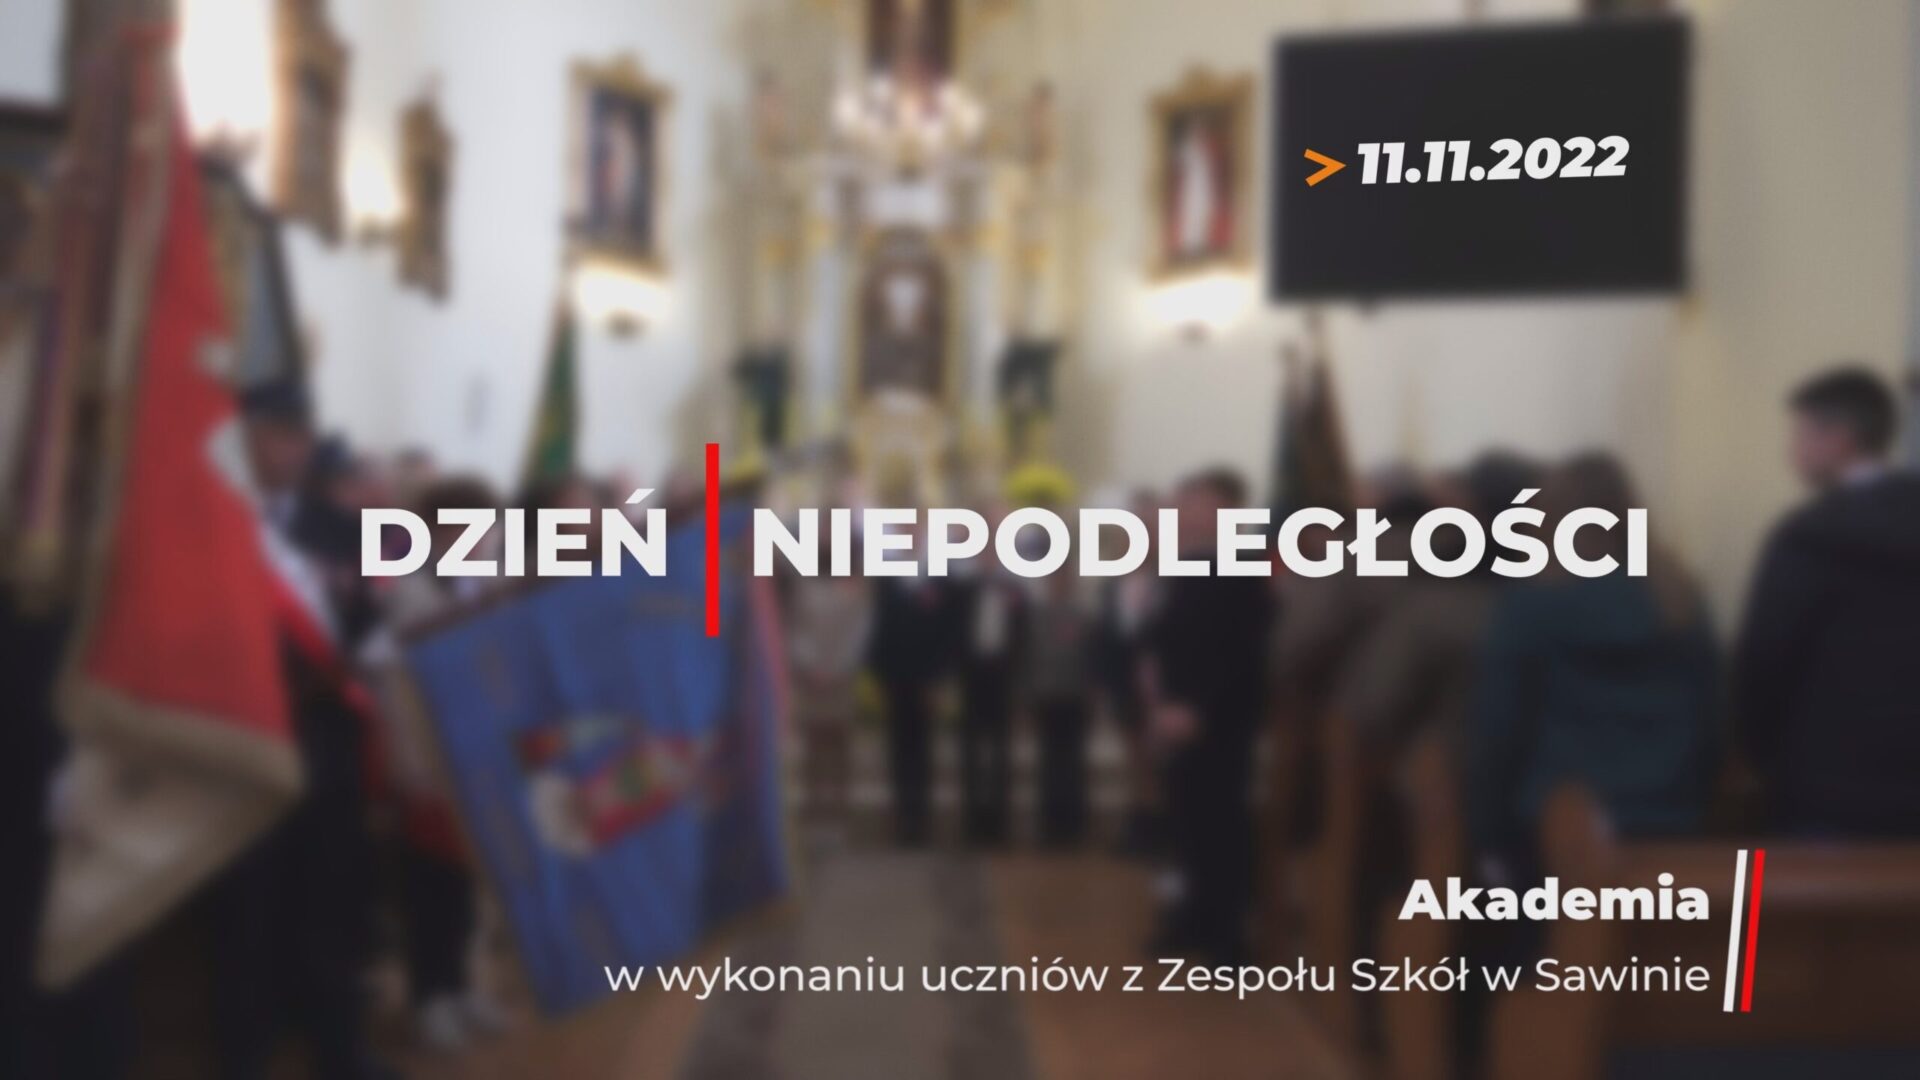 Dzień Niepodległości – akademia w kościele | 11.11.2022